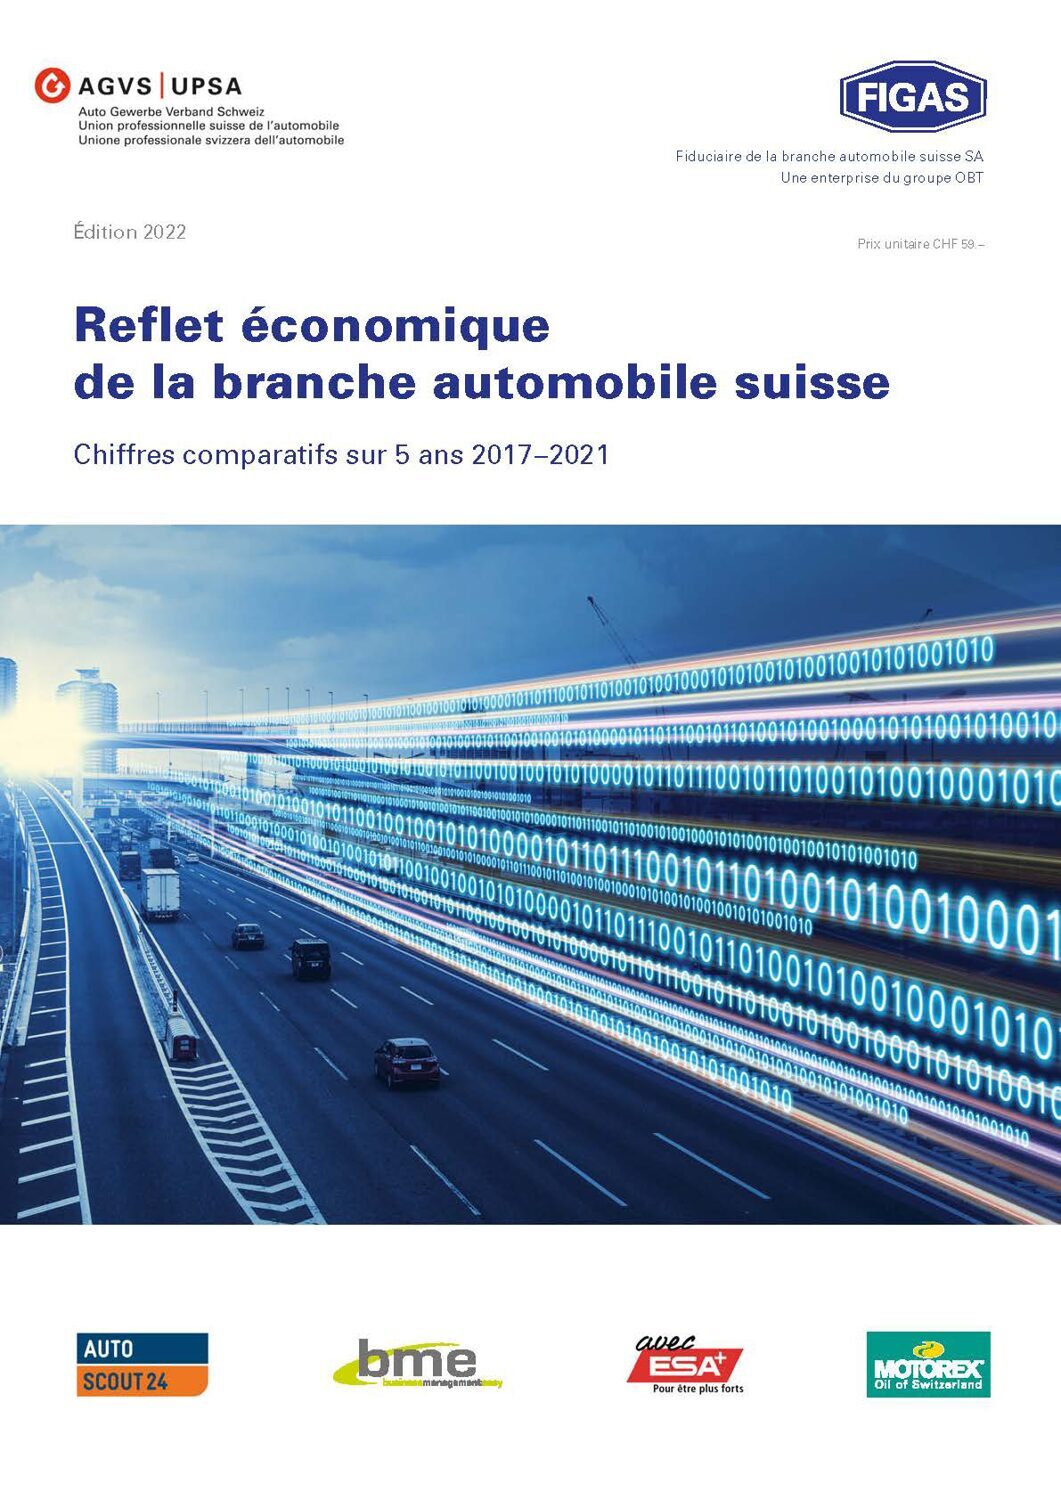 Reflet économique de la branche automobile suisse 2022